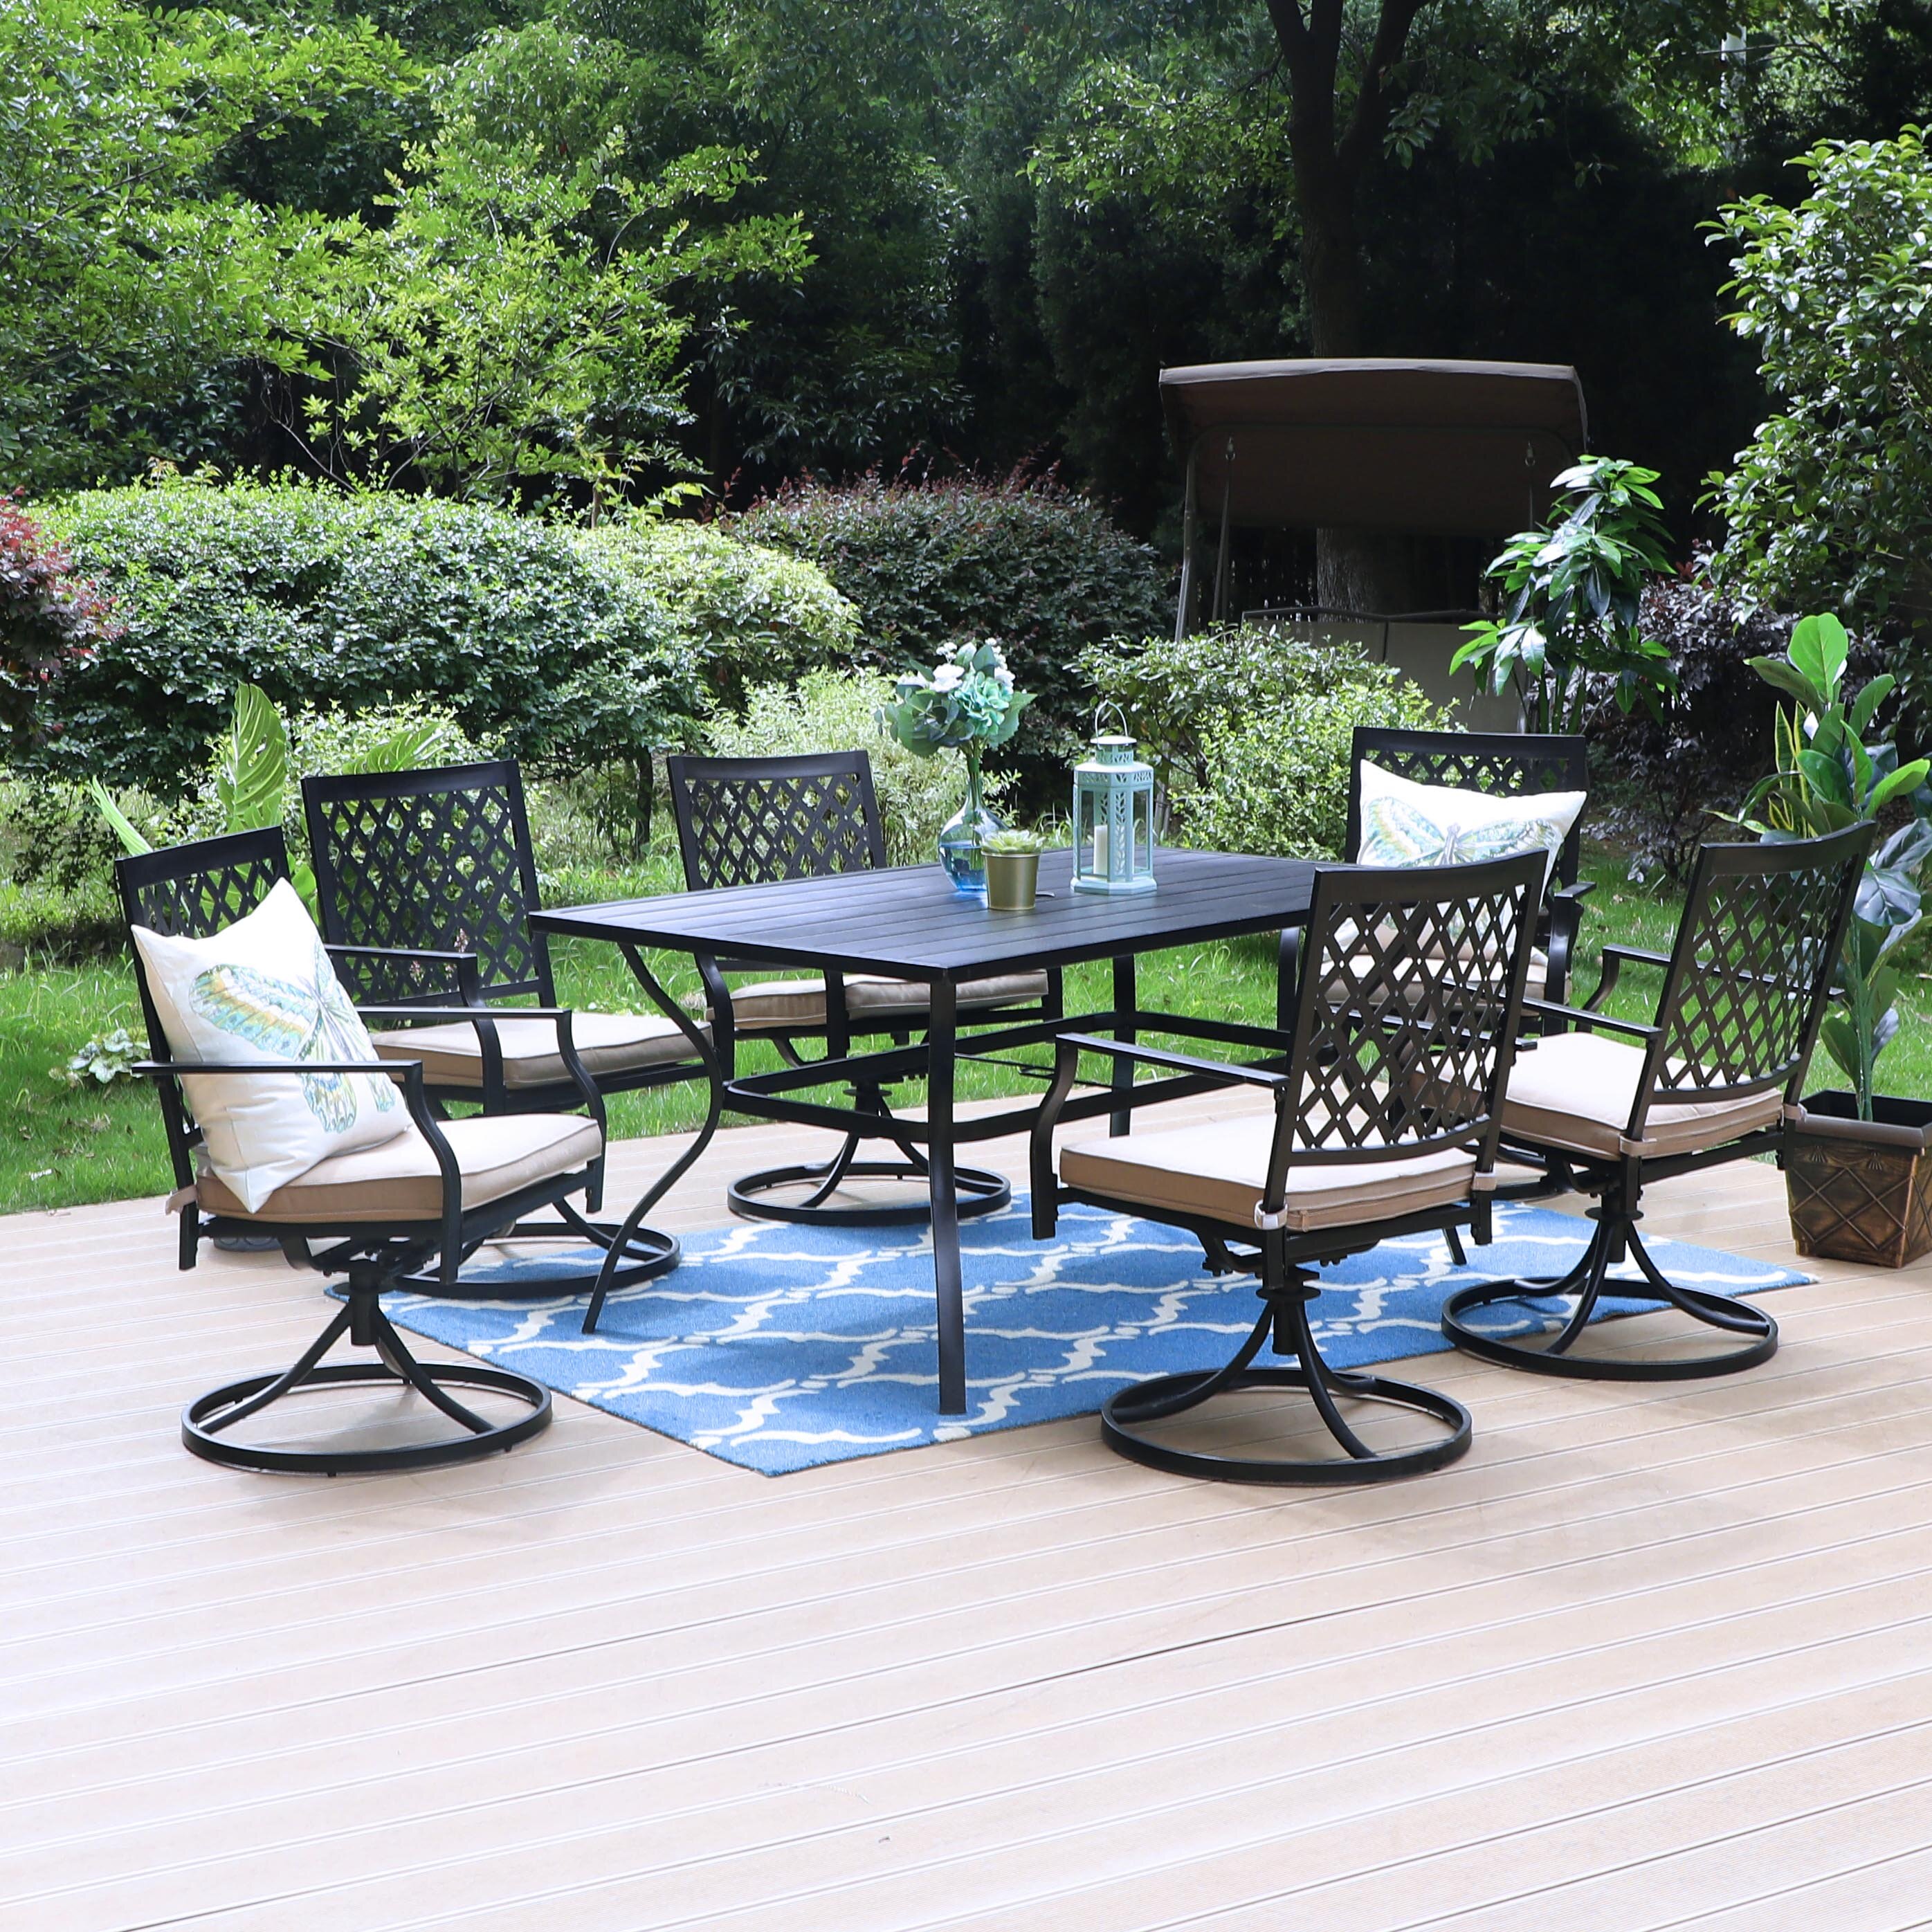 Round Outdoor Dining Table Patio Furniture Grey Wicker Iron Modern Garden Deck